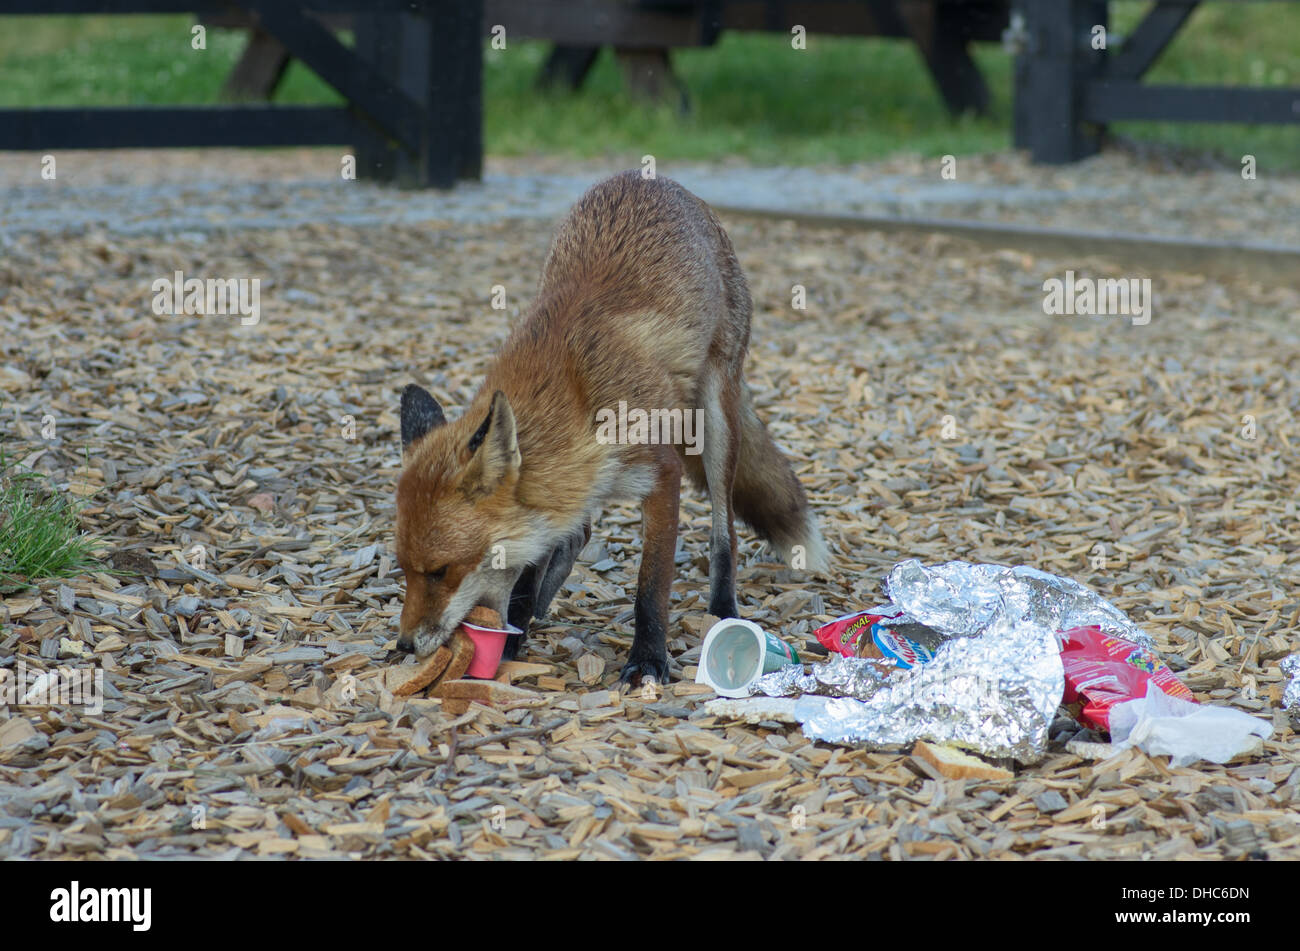 Una hembra fox (Vixen) tras asaltar un depósito de desechos de alimentos Foto de stock